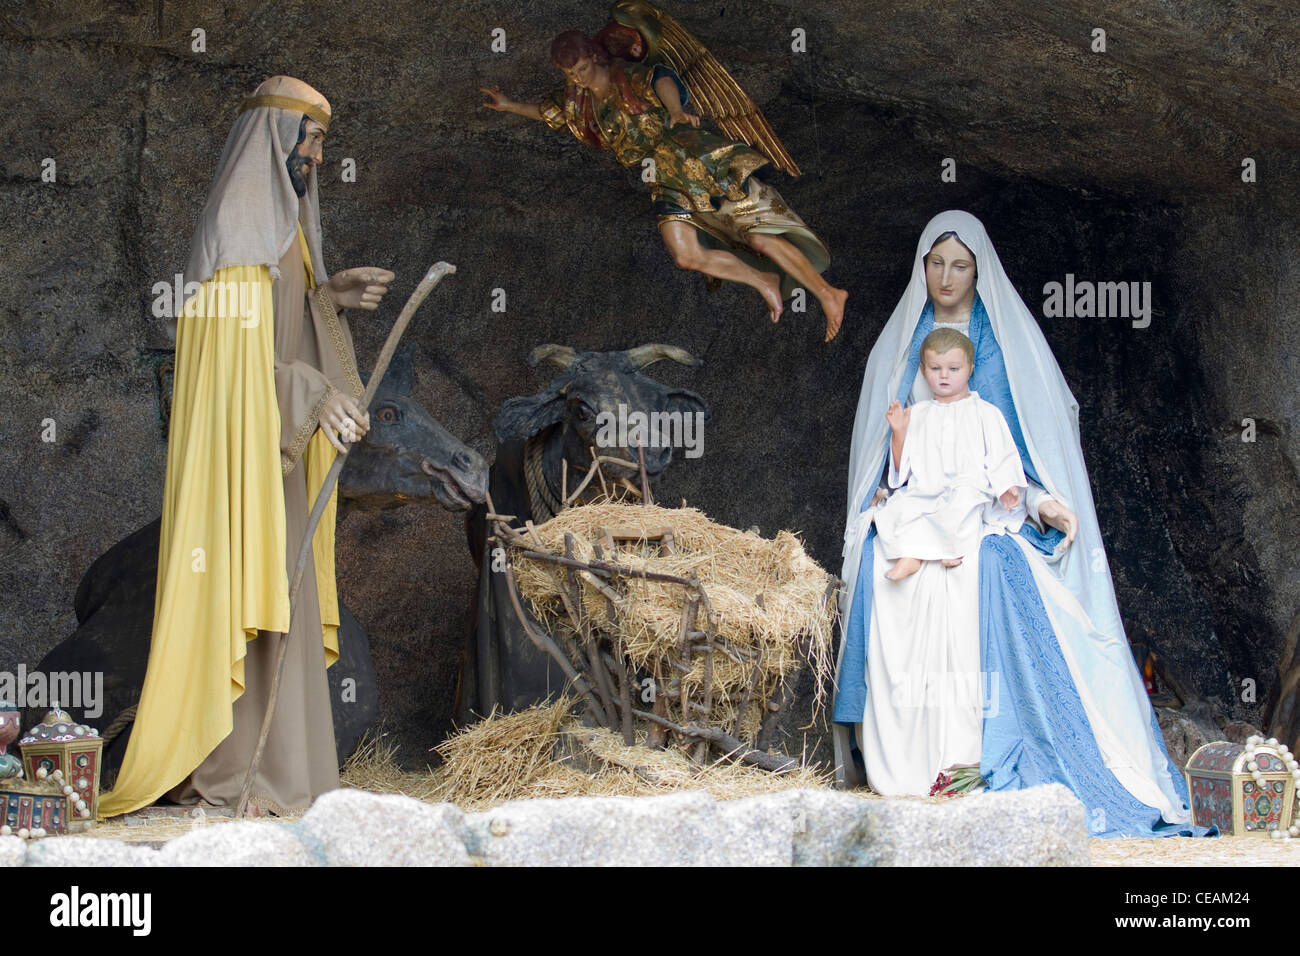 St. Peter's Basilica Basilica di San Pietro Vatican city Rome Nativity scene Stock Photo